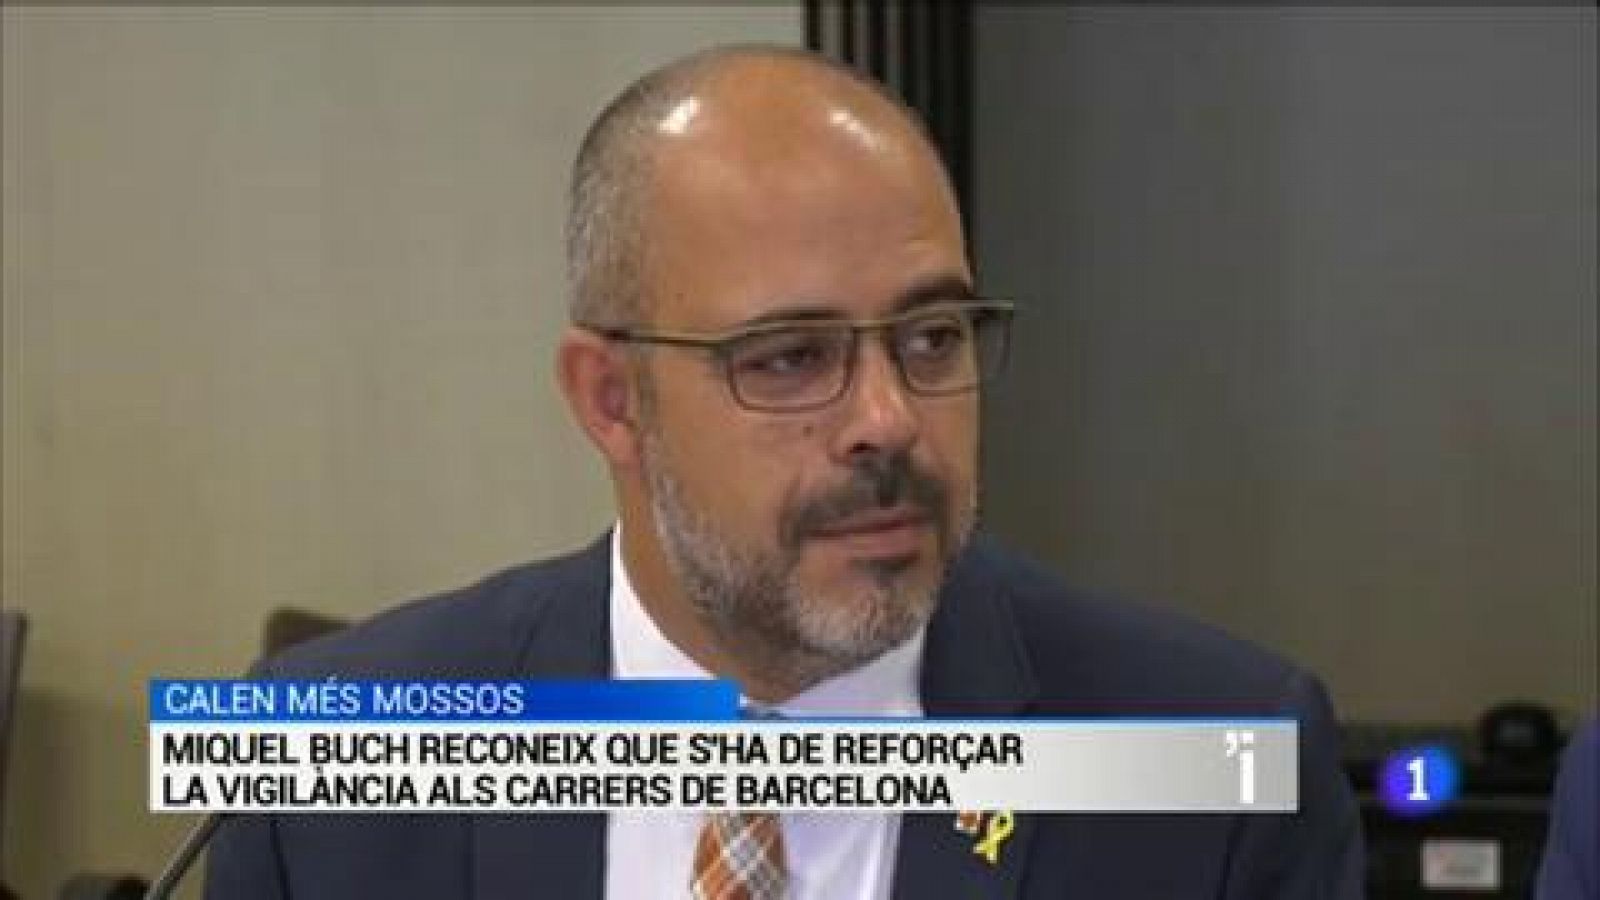 L'Informatiu | Sumari de les notícies del 05/09/2019 - RTVE.es